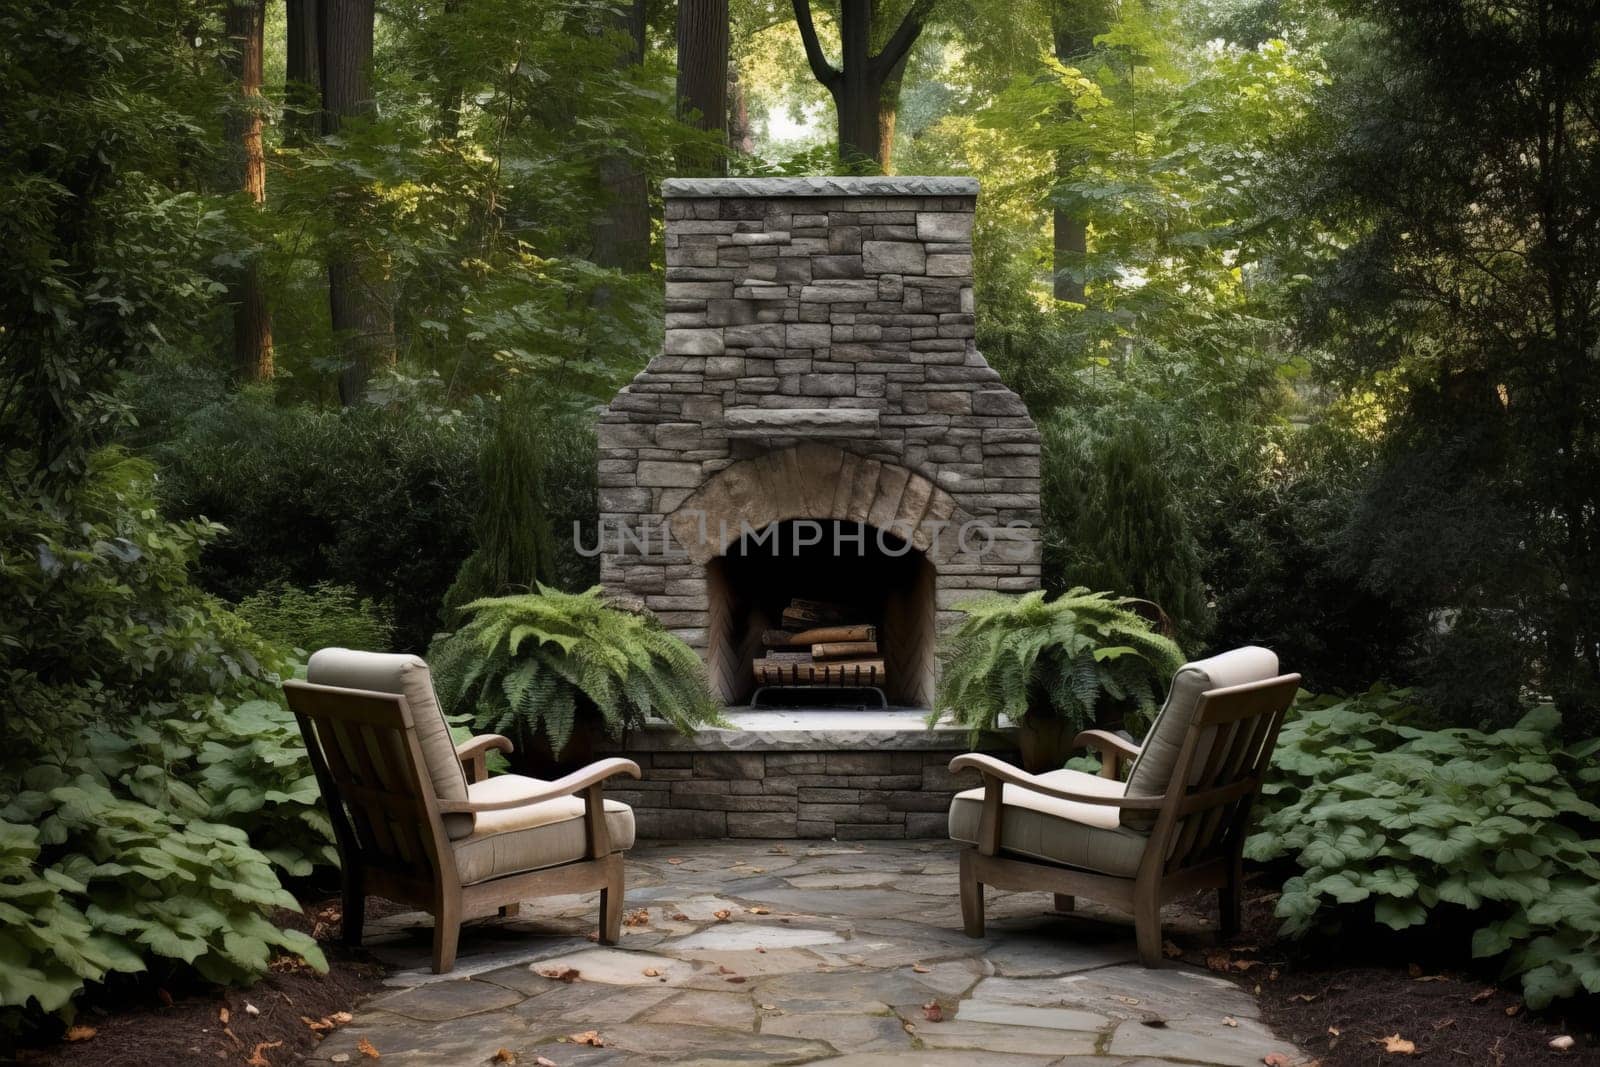 Backyard stone fireplace chairs. Generate Ai by ylivdesign